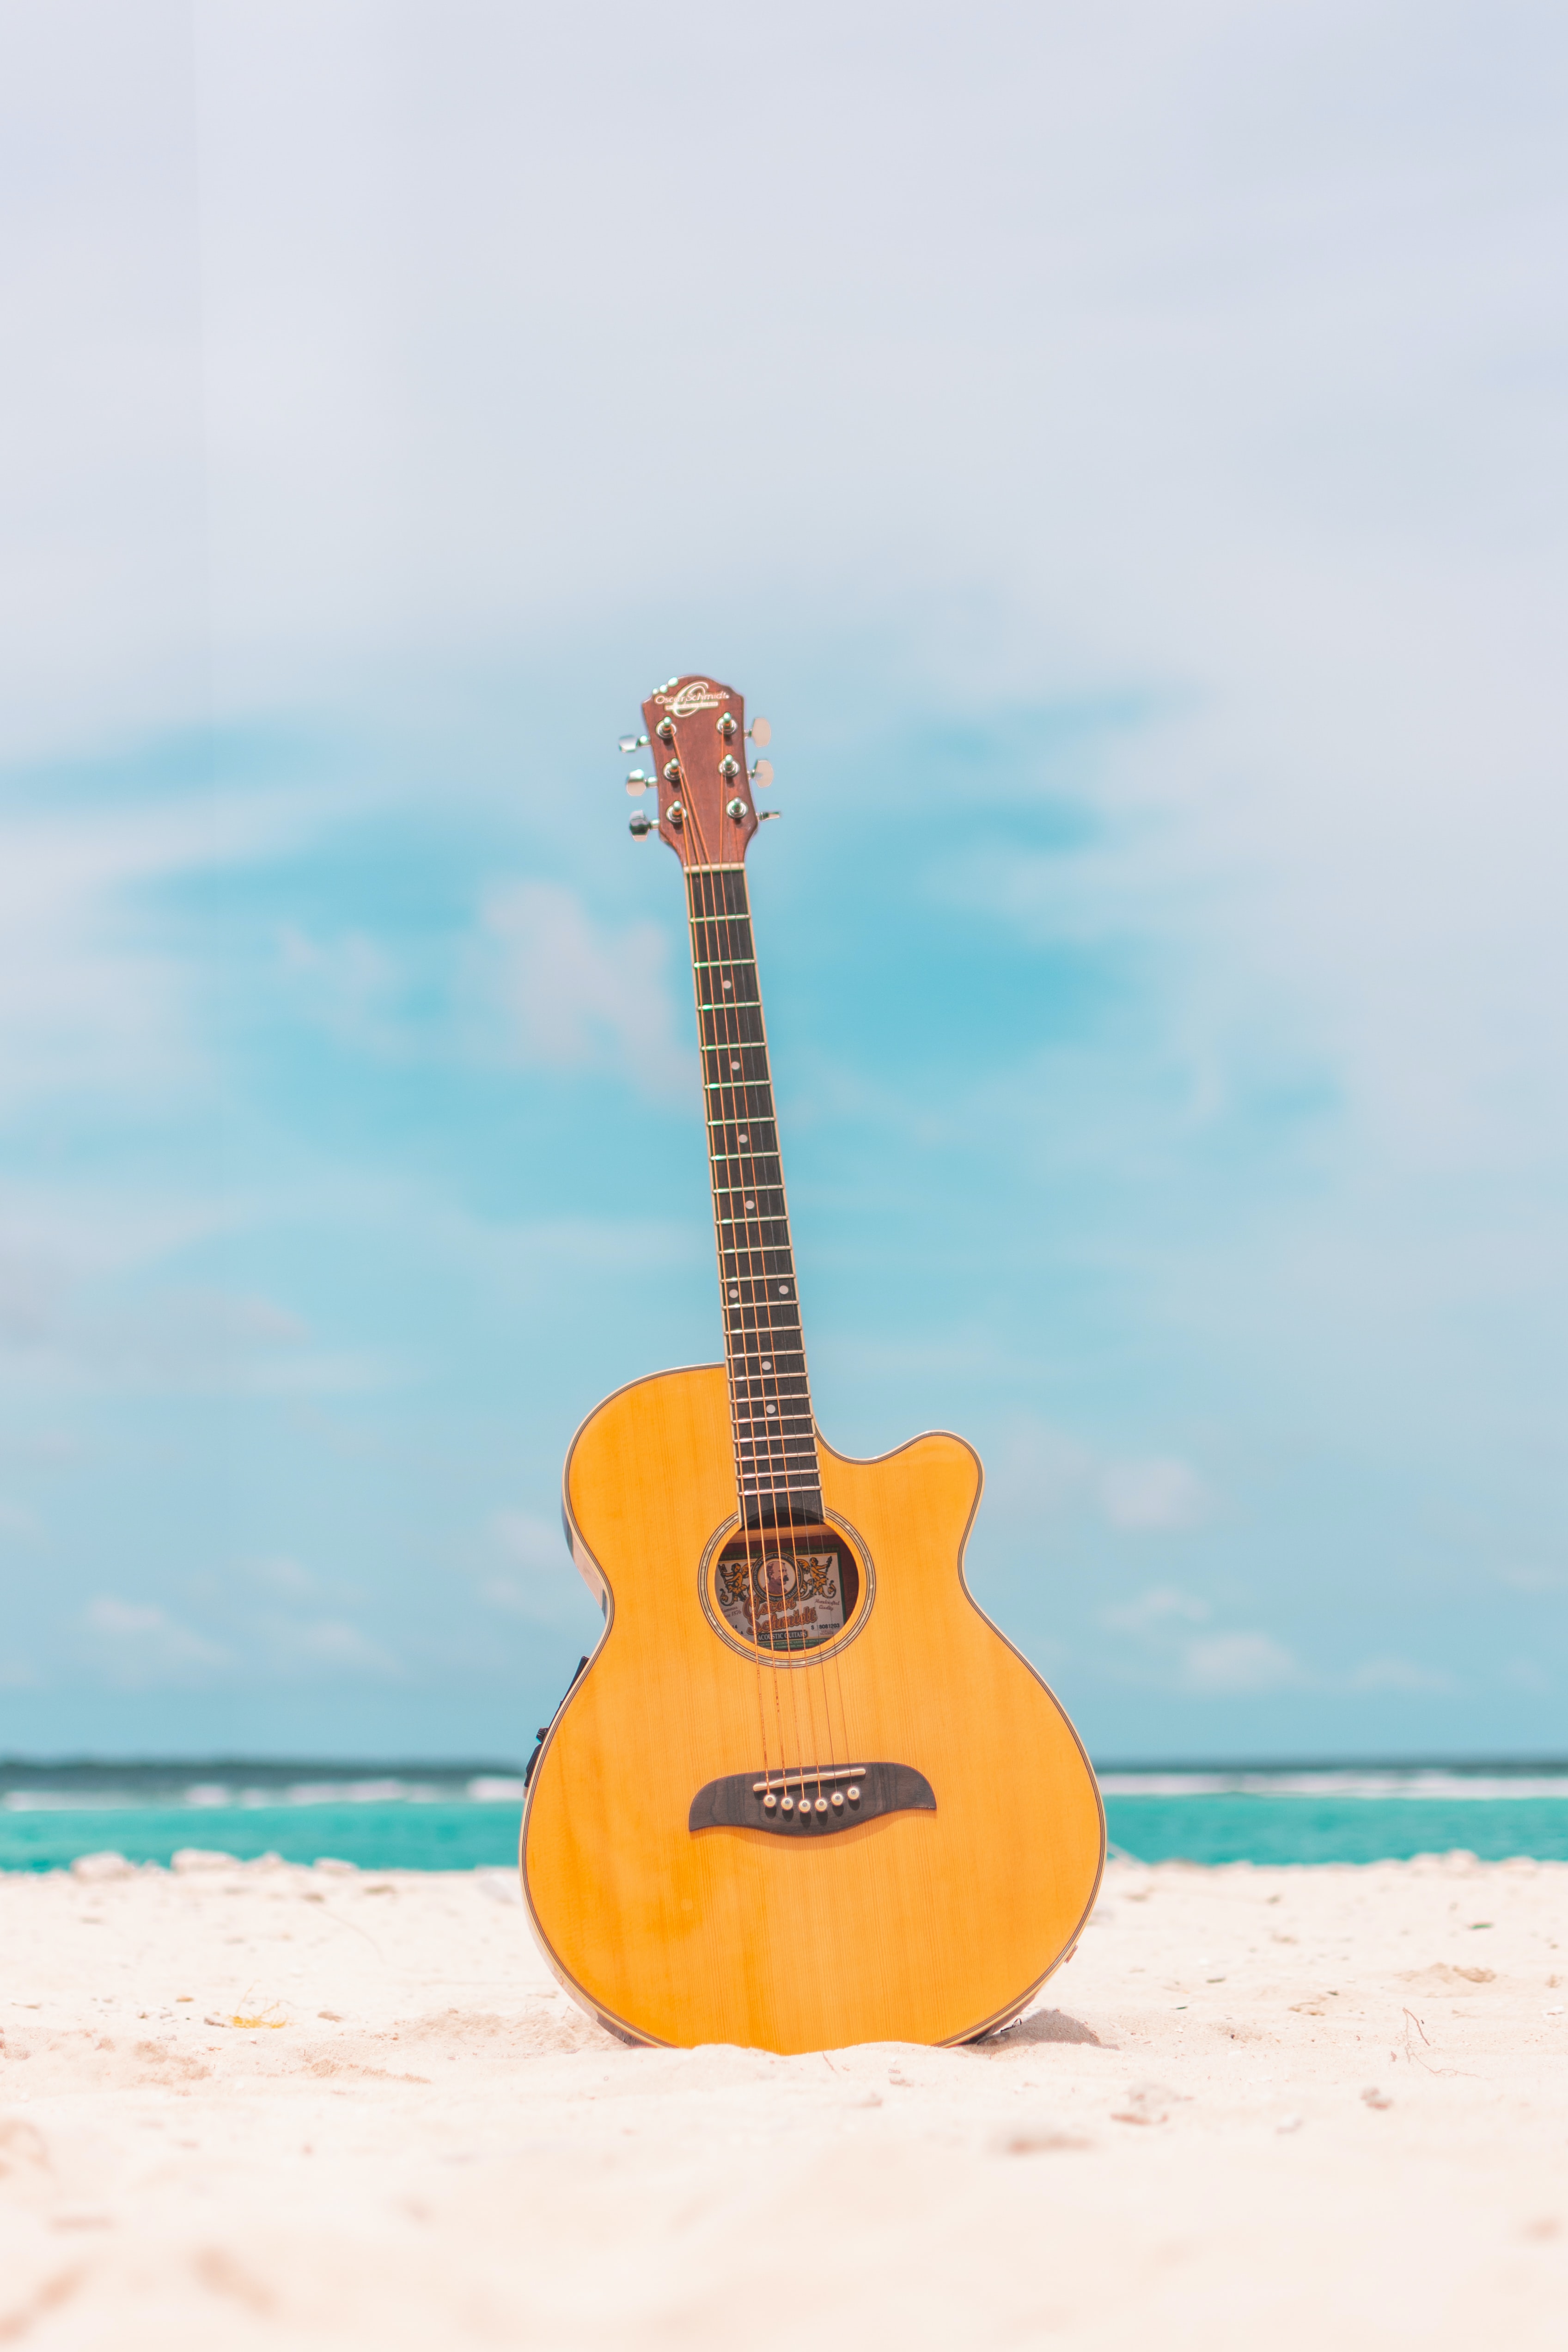 手機的53853屏保和壁紙吉他。 免費下載 海滩, 工具, 夏天, 音乐 圖片